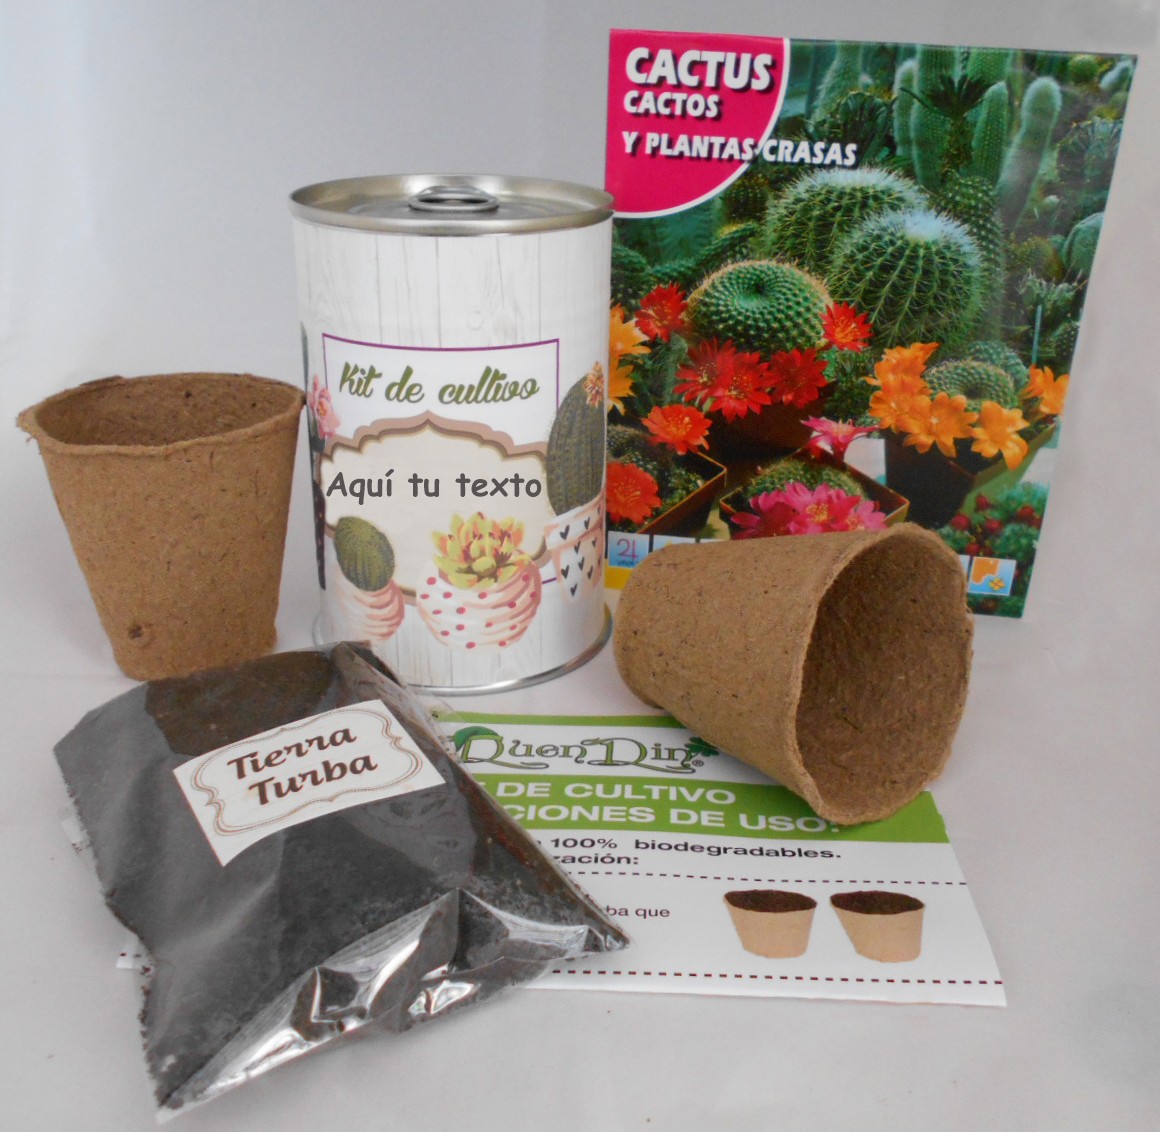 https://www.regaloselmagodemei.com/19645/kit-de-cultivo-cactus-para-detalles-originales.jpg